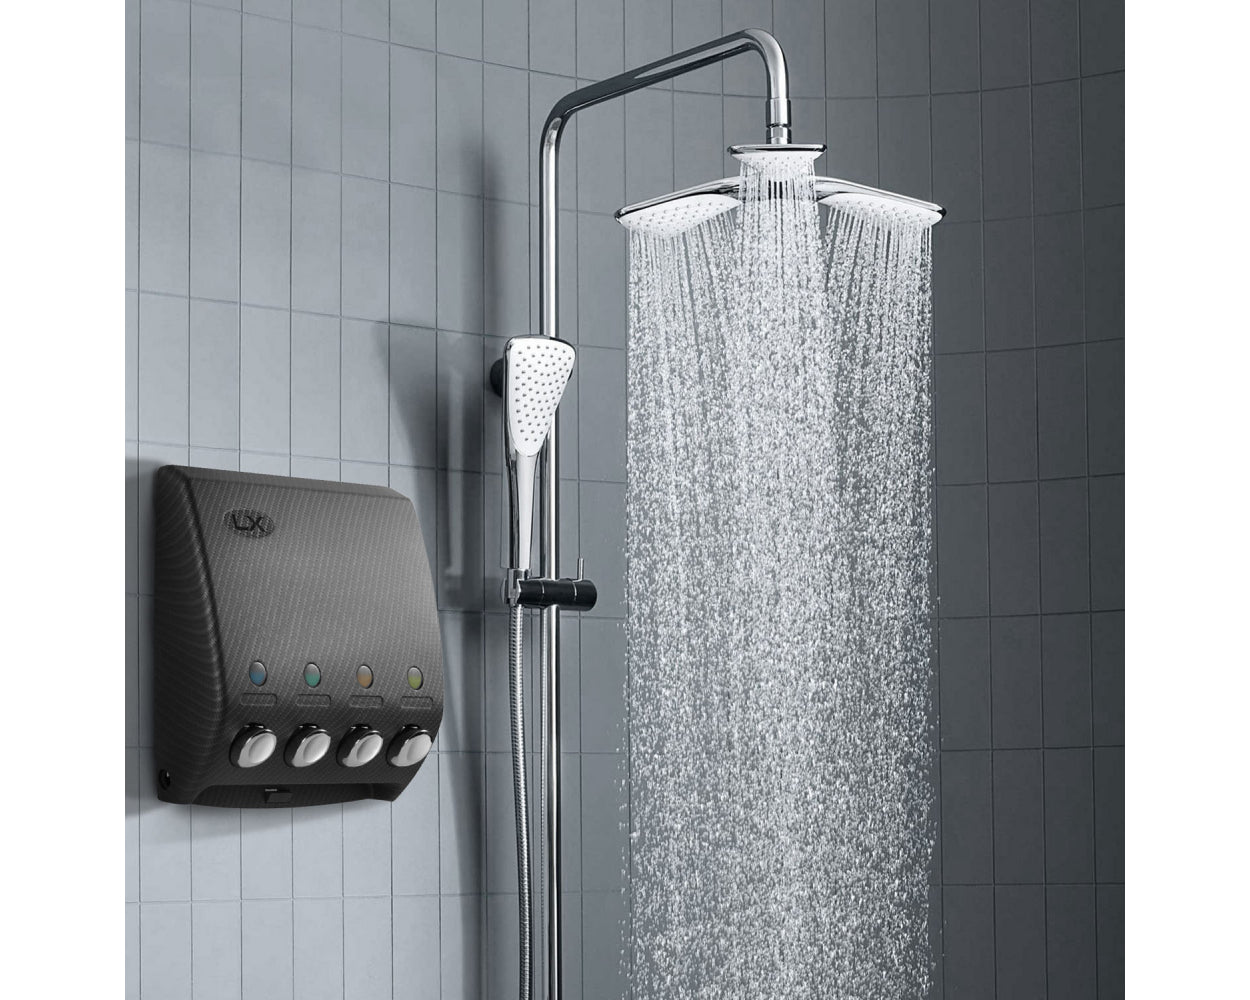 Four Chamber Shower Soap Dispenser in Carbon Fiber Design